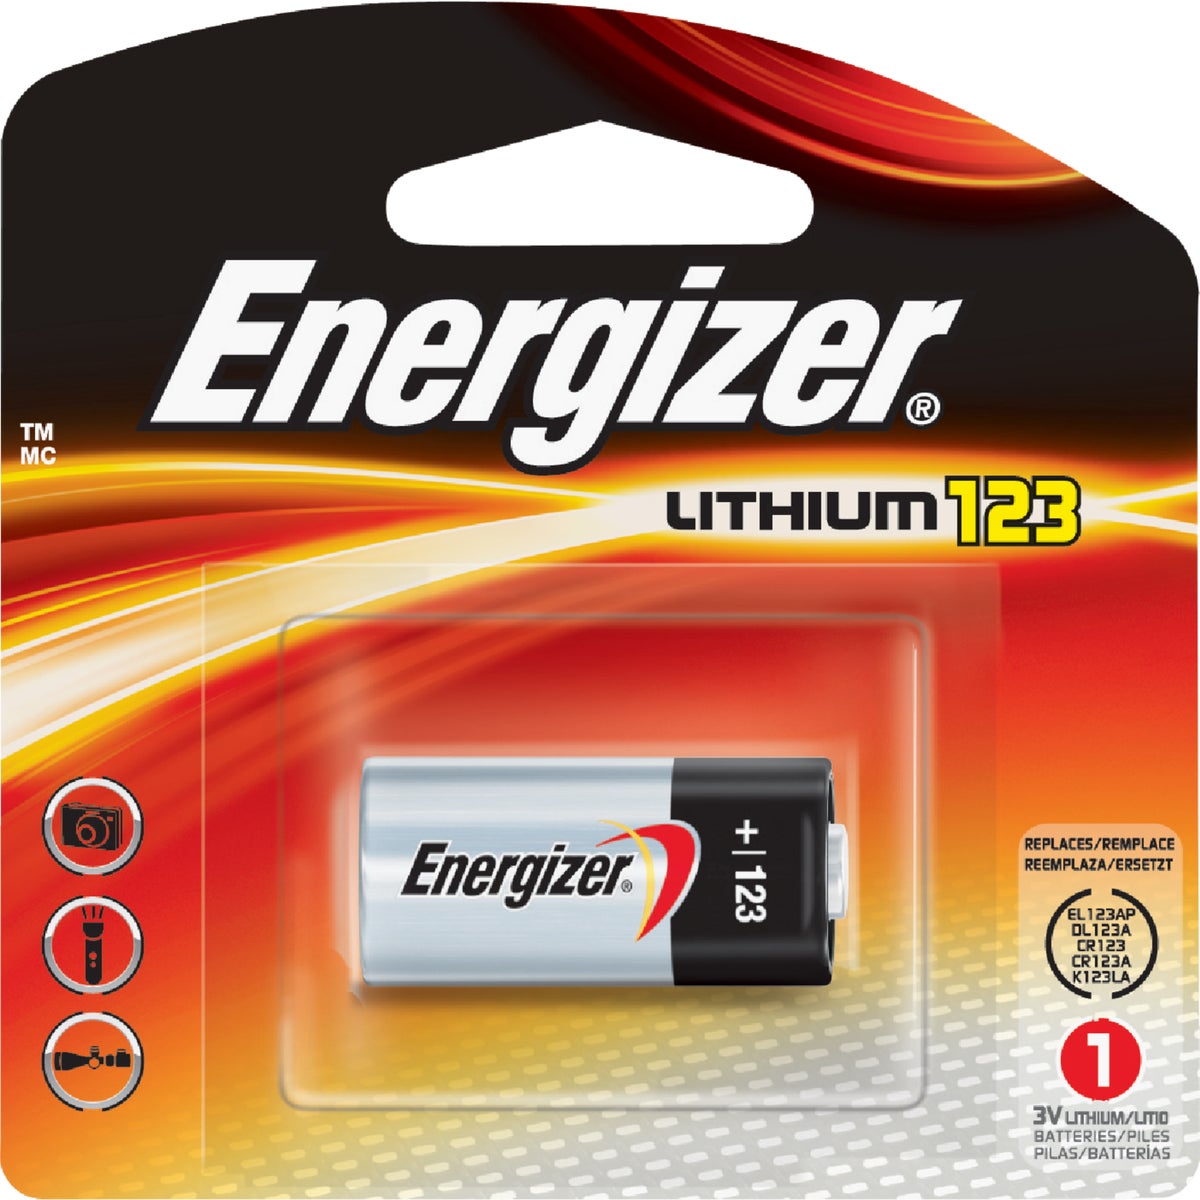 Energizer 123 Lithium 3V Photo Battery